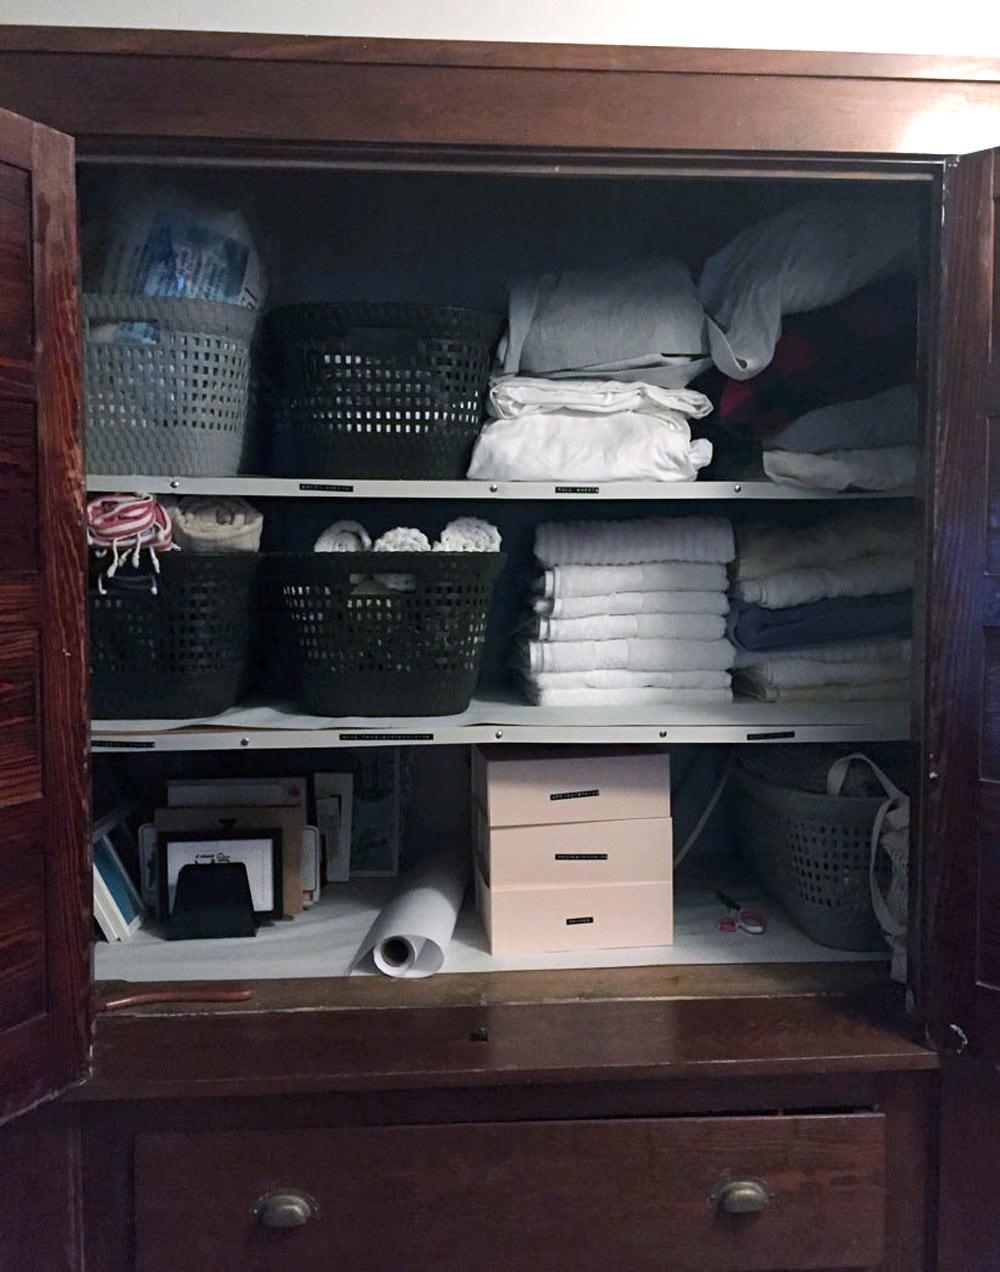 DIY linen closet organization after